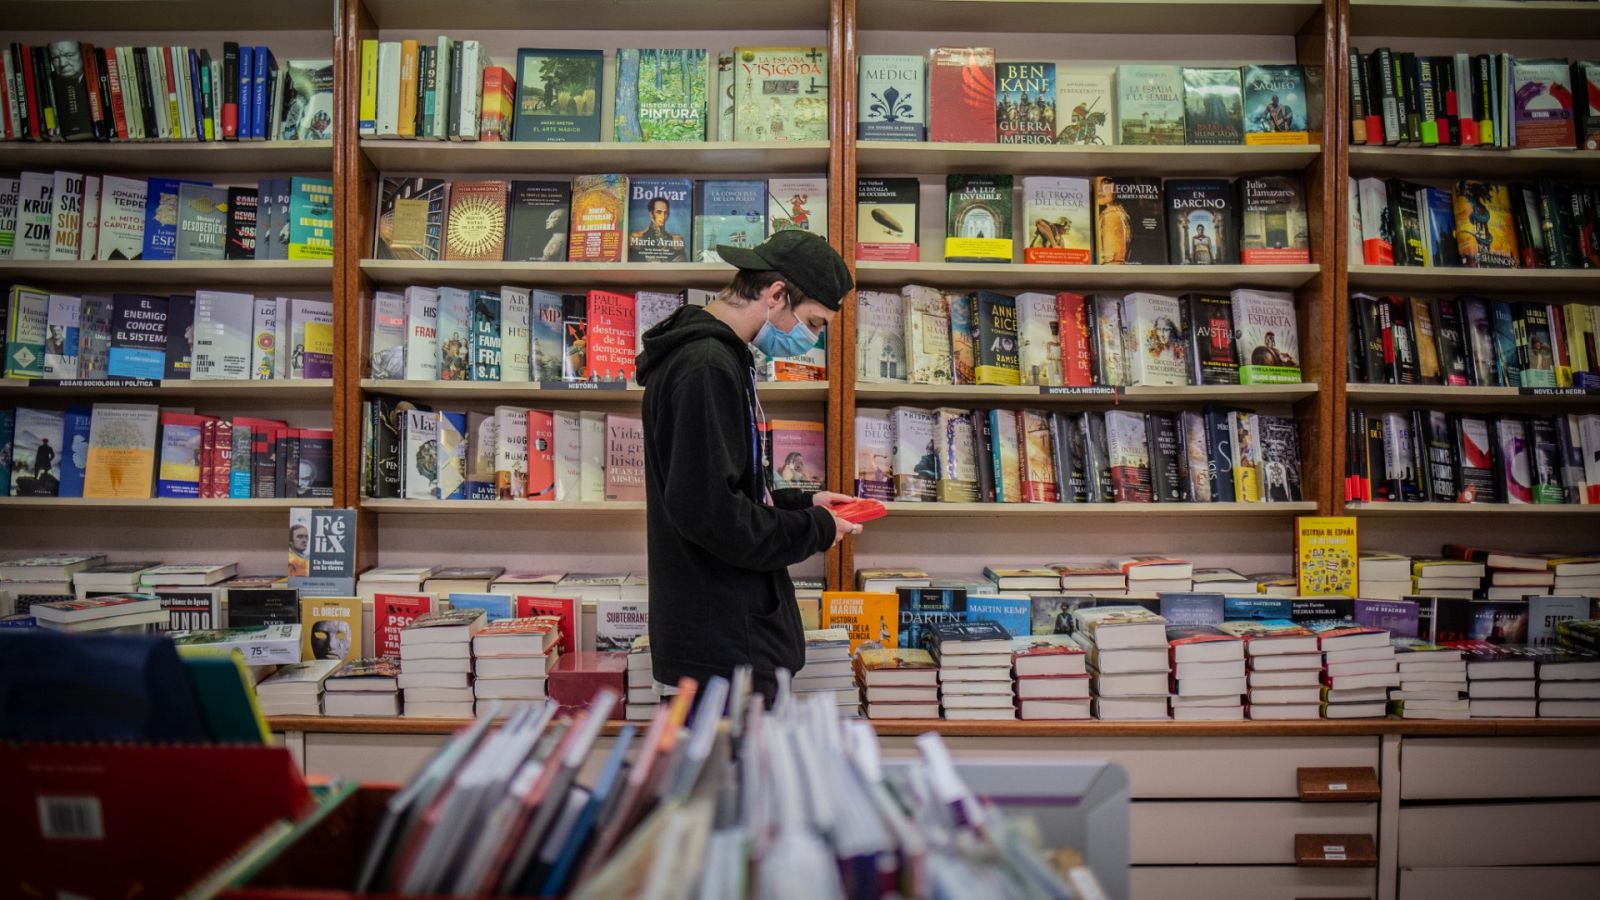 Un joven observa un libro en una librería durante la pandemia de coronavirus.